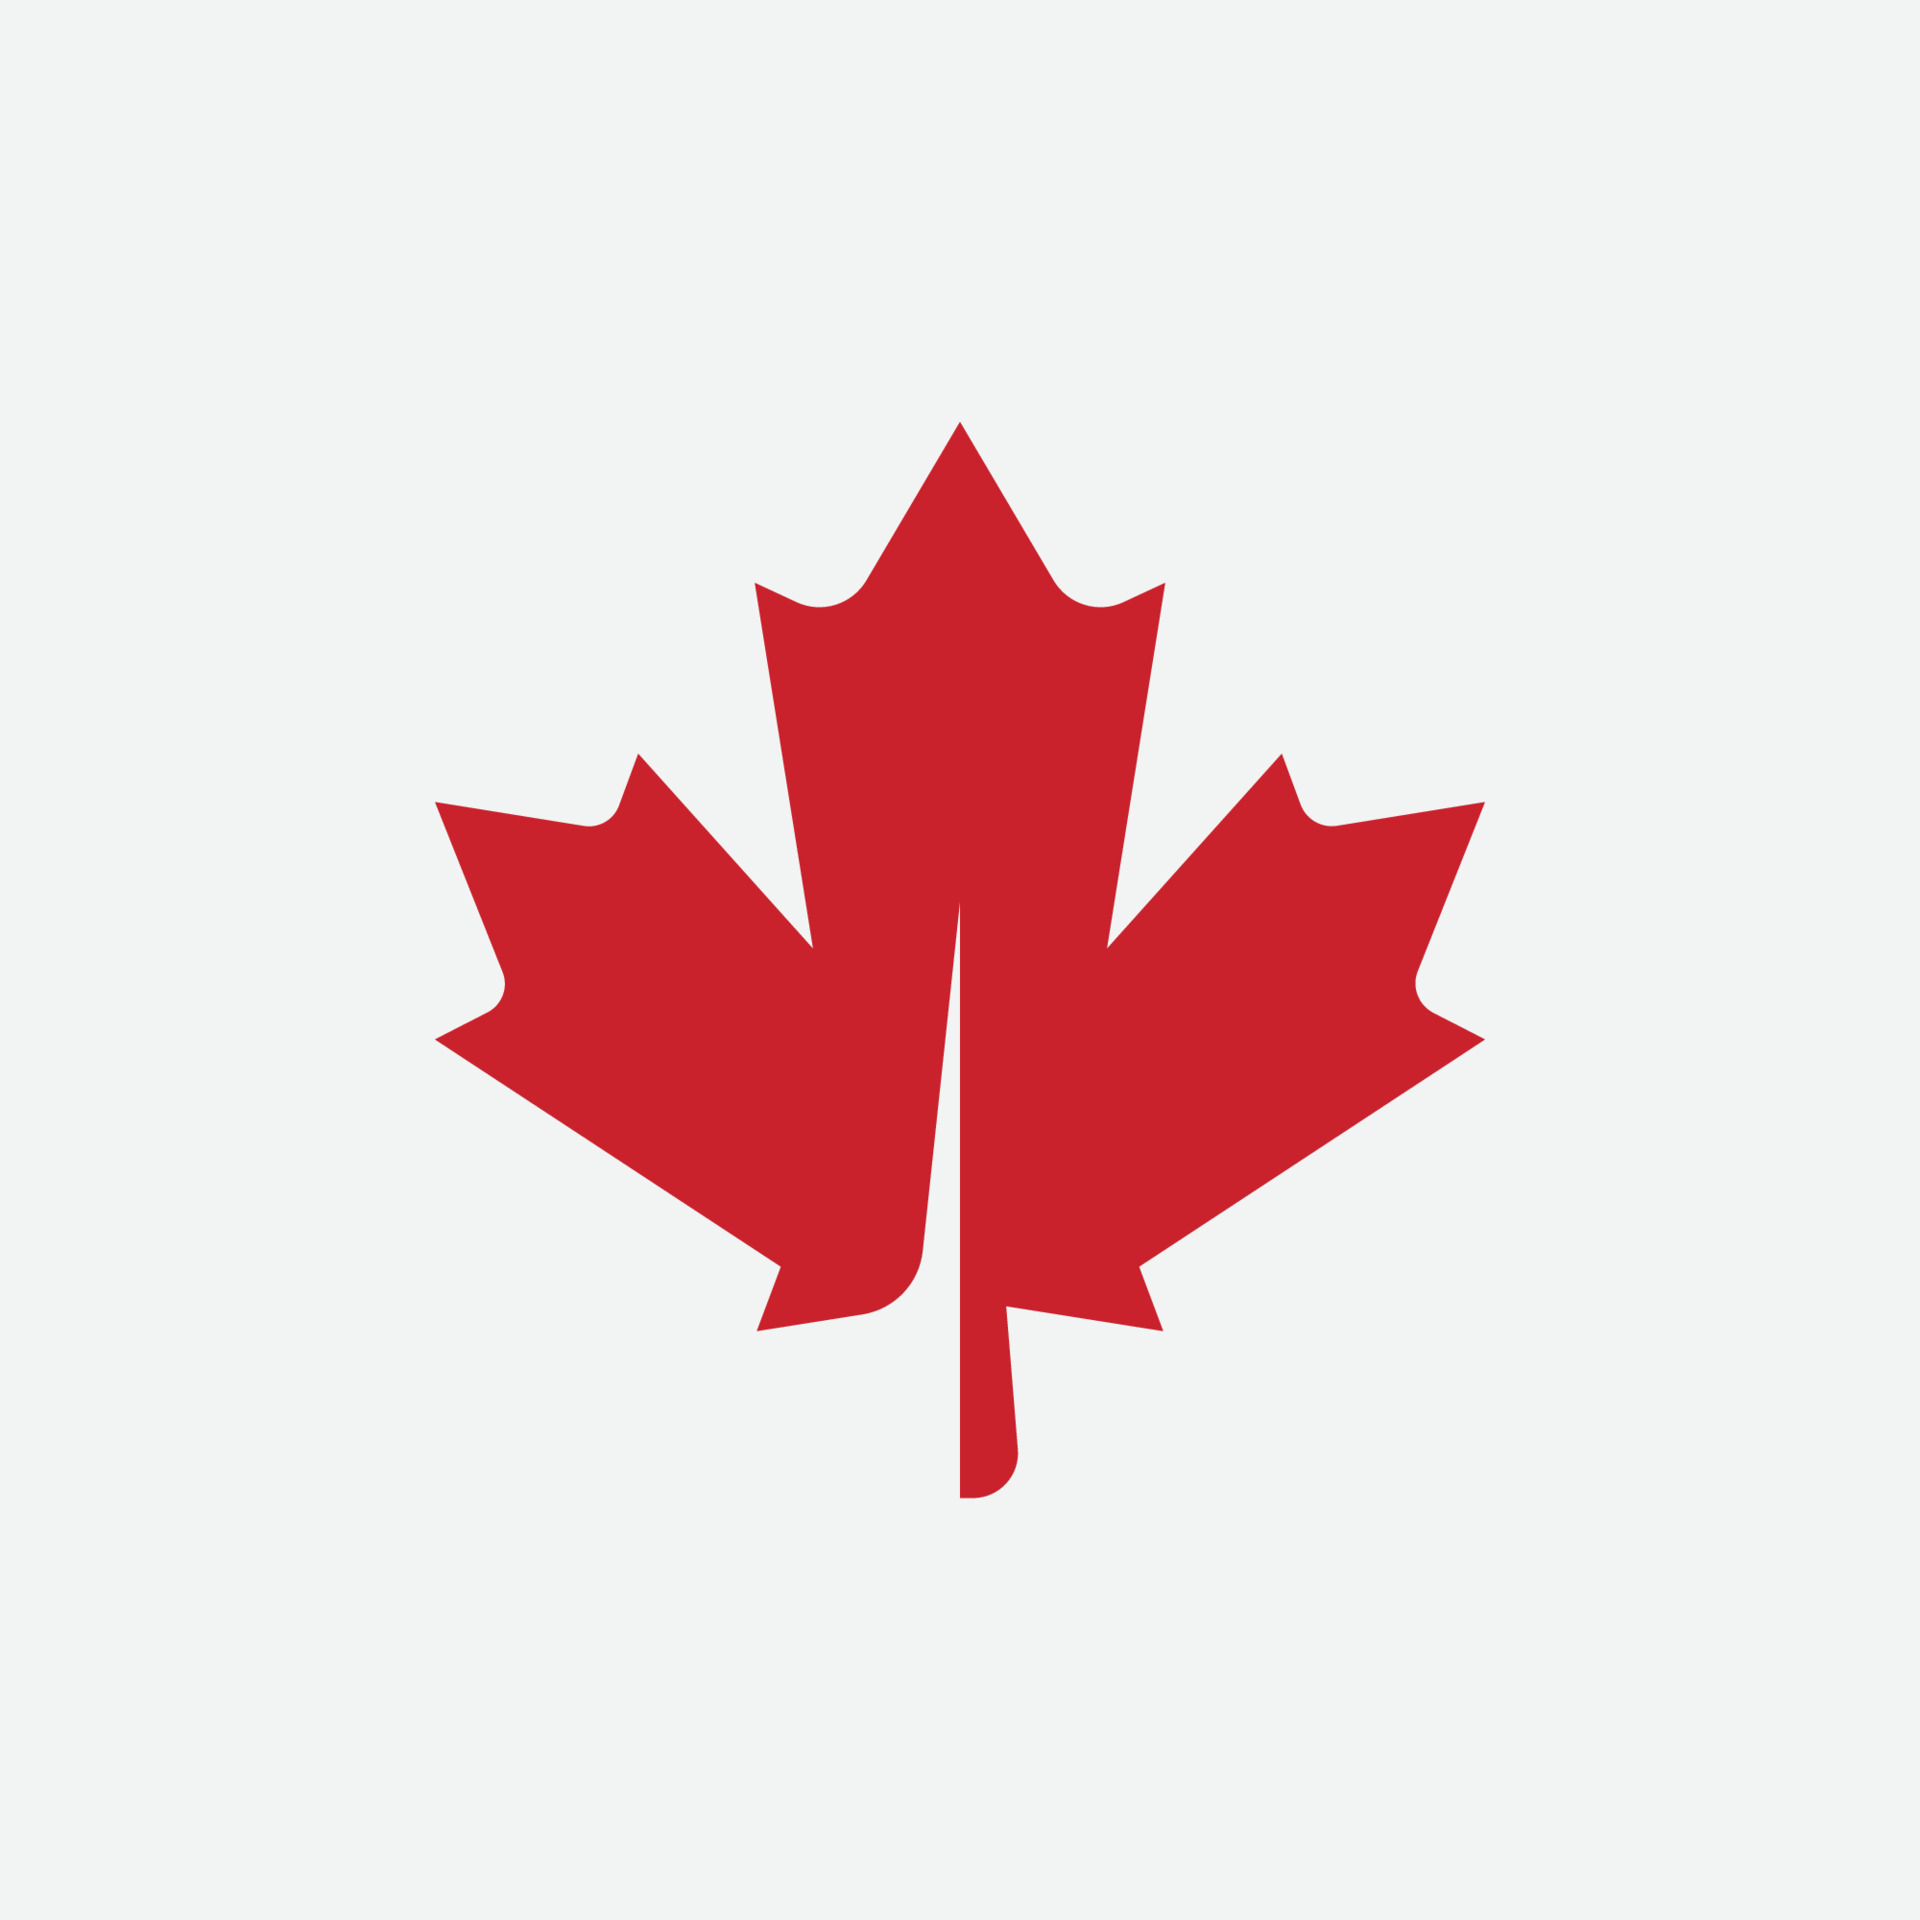 Maple leaf logo, Red maple leaf, Canada symbol, Red Canadian Maple LeafMaple leaf logo template vector icon illustration, Maple leaf vector illustration, Red maple, Canada symbol Vector Art at Vecteezy